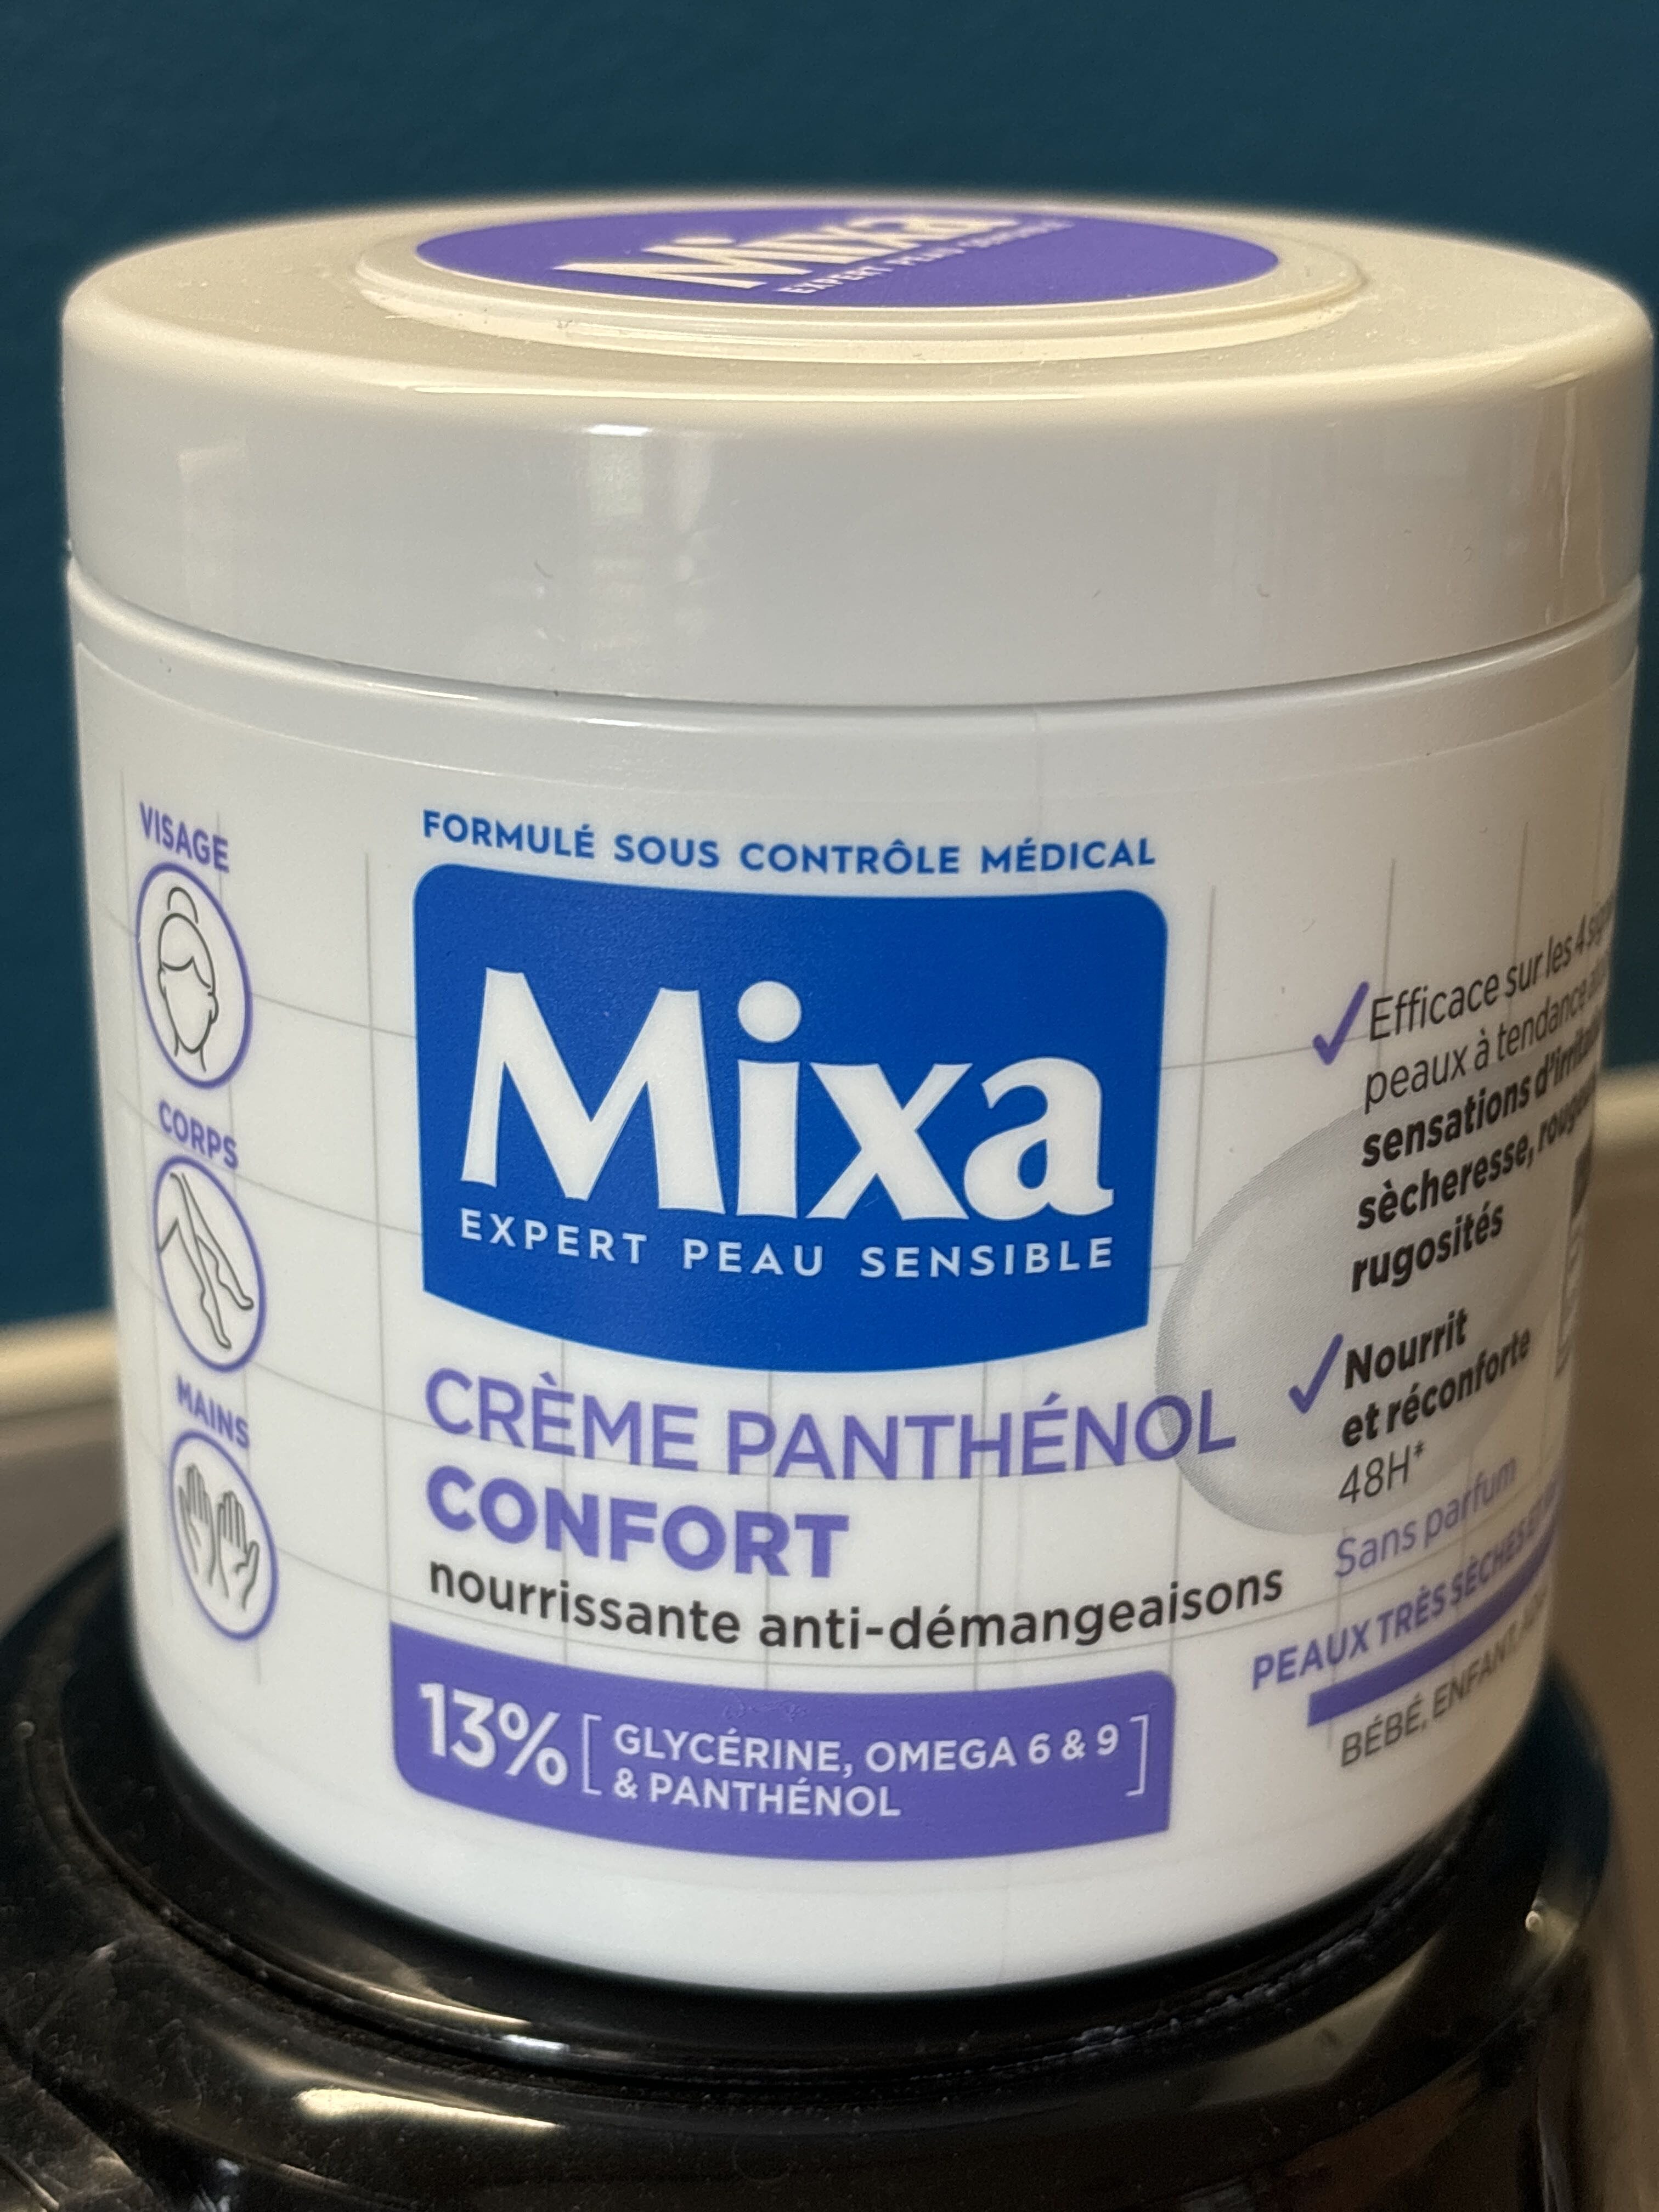 Mixa expert peau sensible - Produto - fr